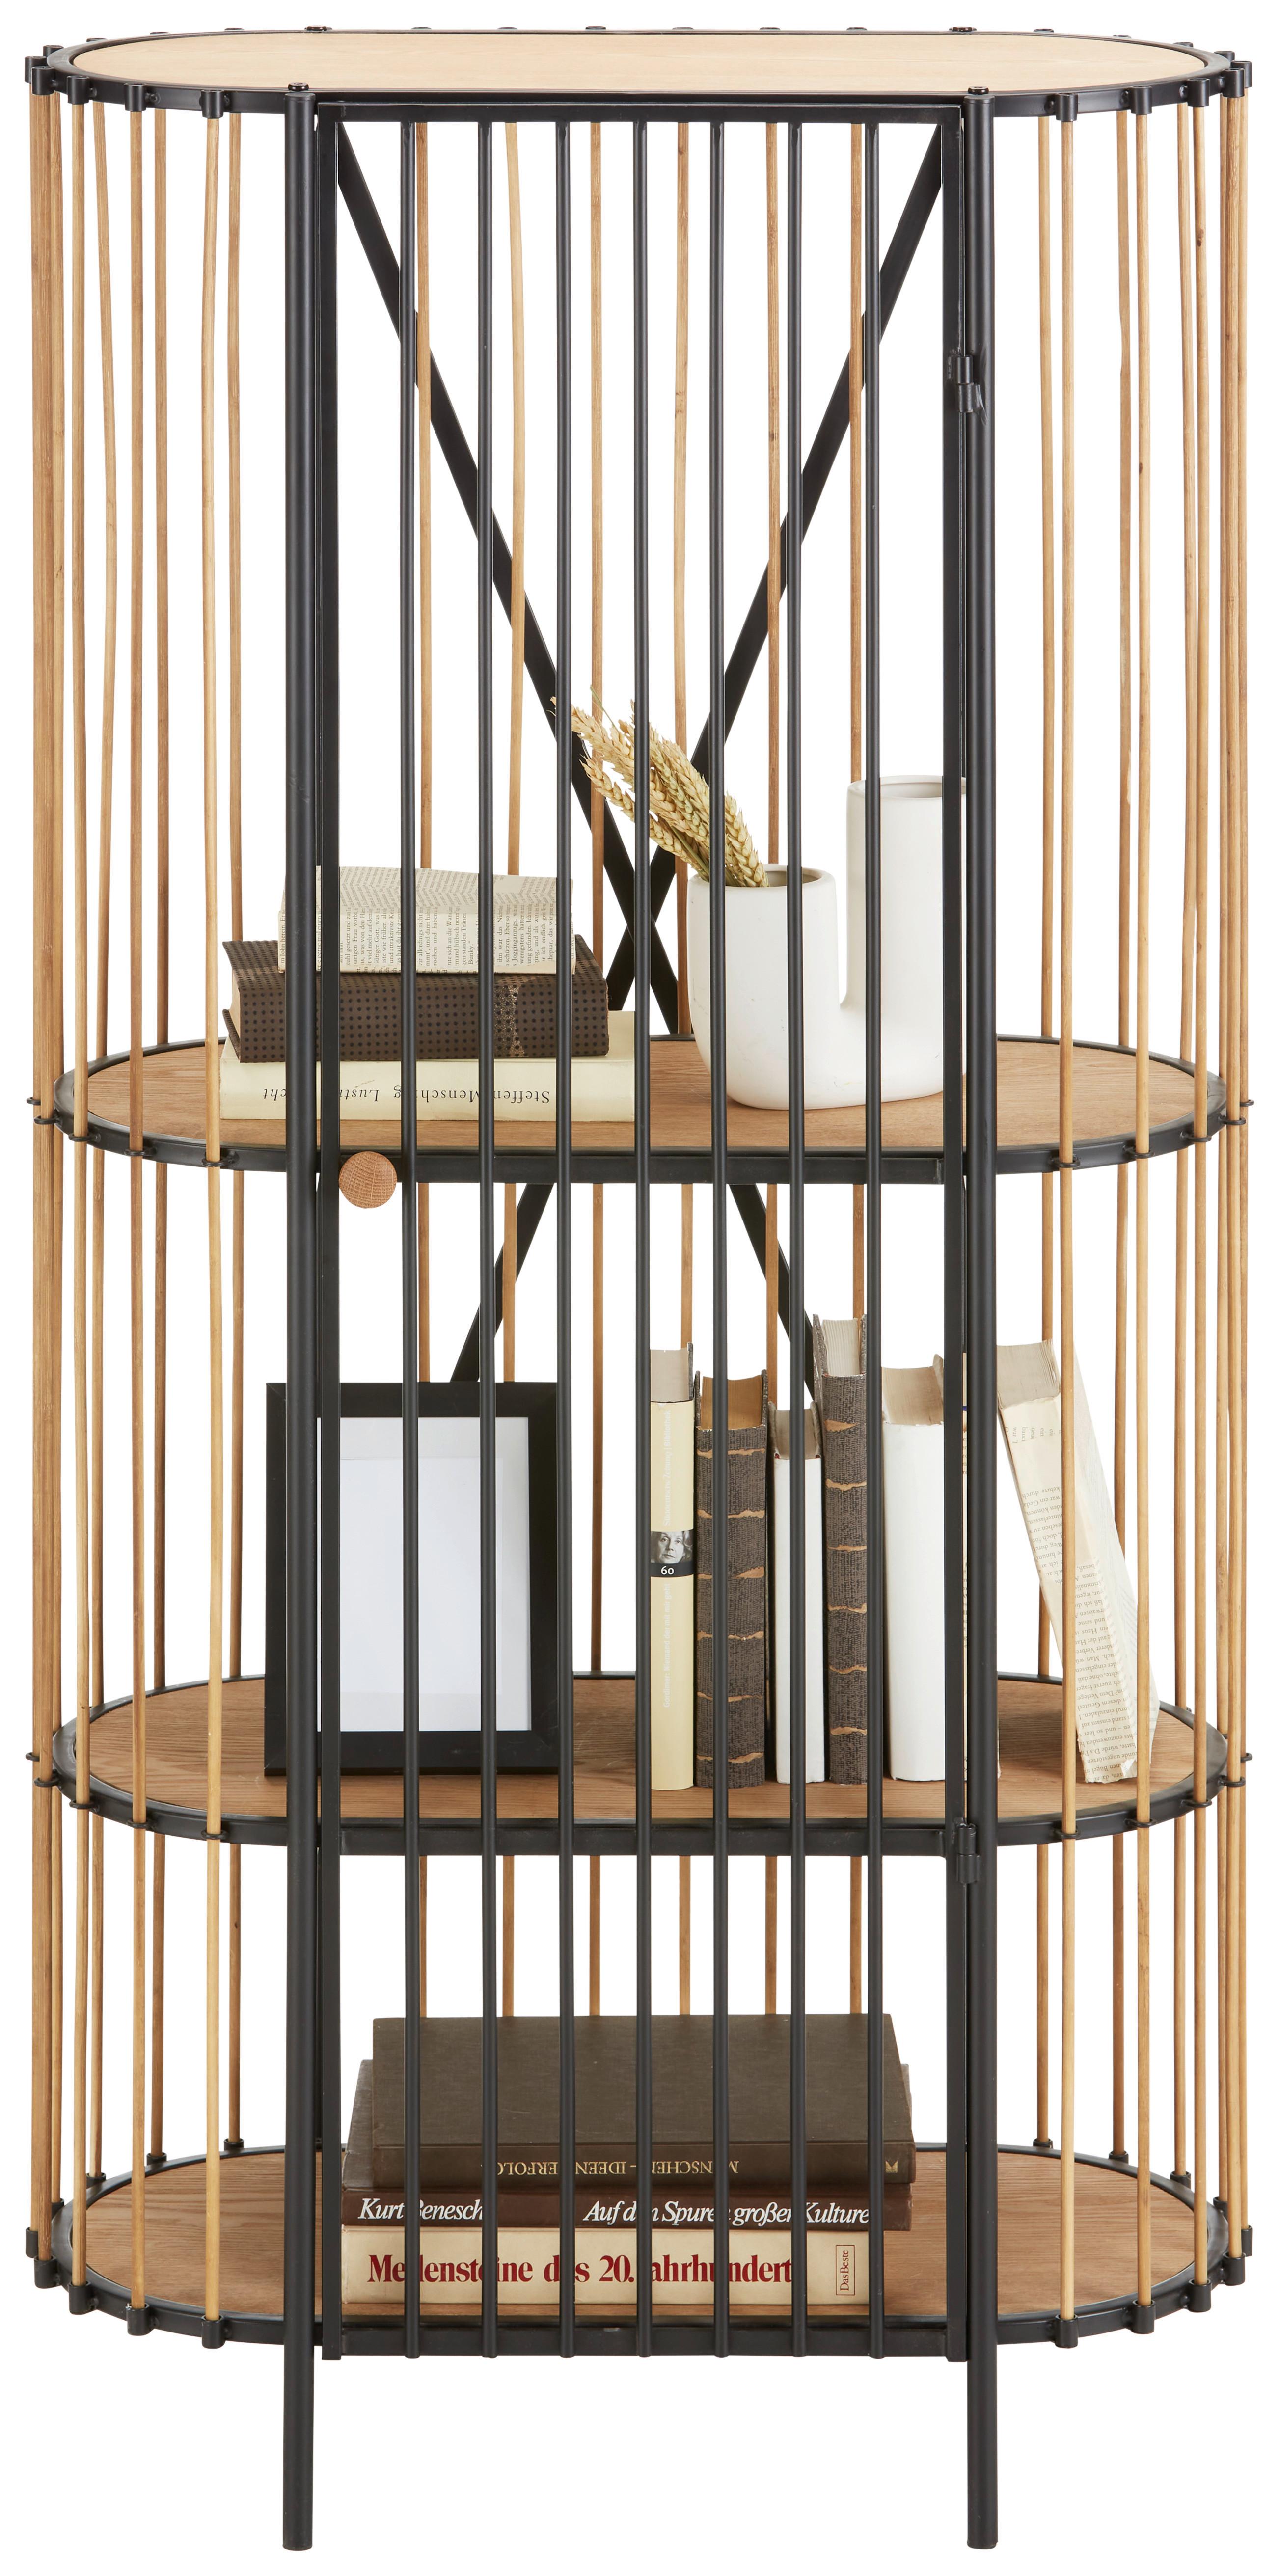 Regál Bamboo - černá/přírodní barvy, Lifestyle, kov/dřevo (67/132/32cm) - Premium Living